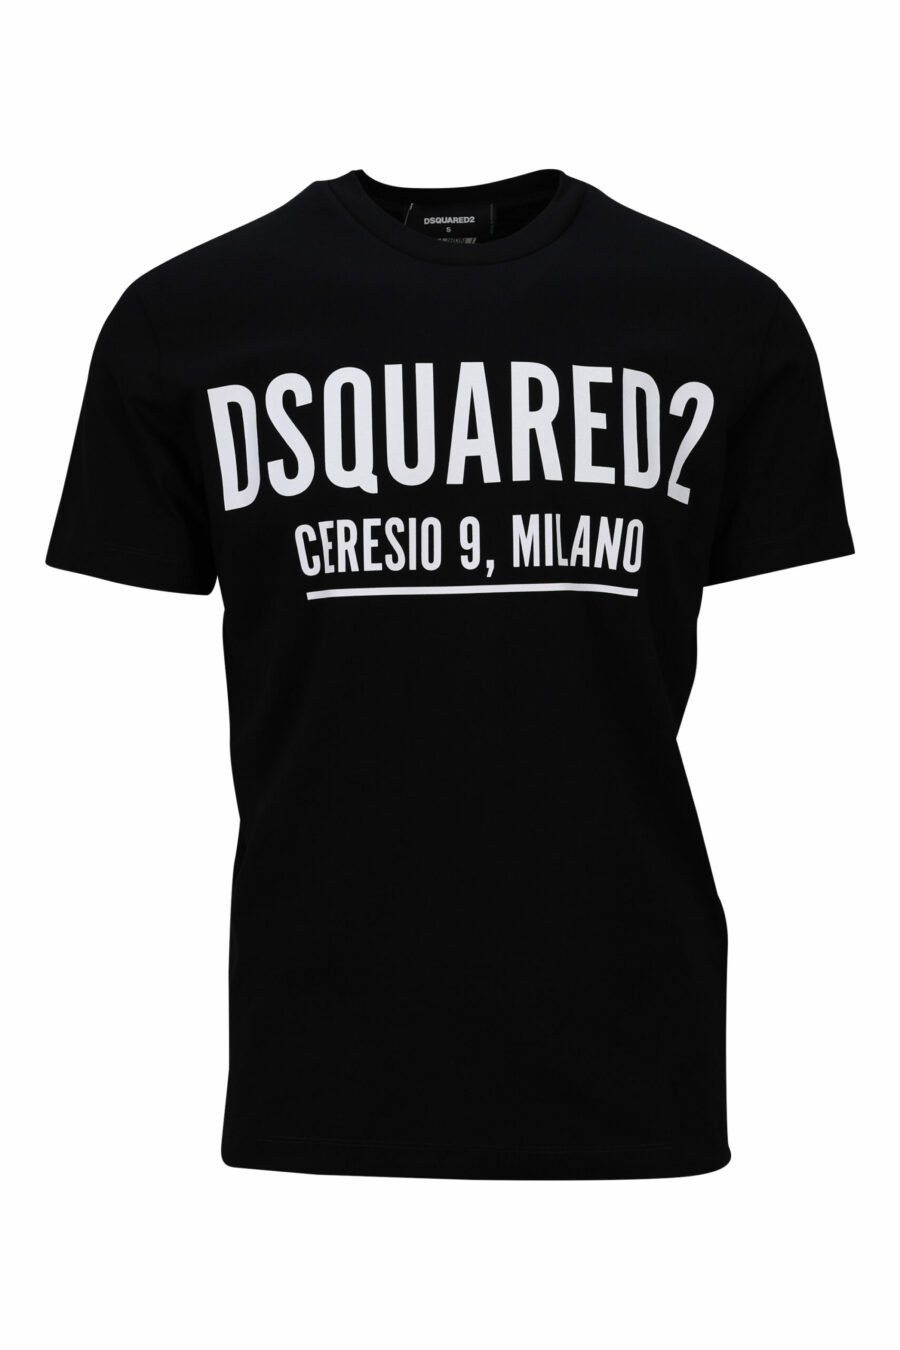 Schwarzes T-shirt mit Maxilogo "ceresio 9 milano" - 8054148504984 skaliert